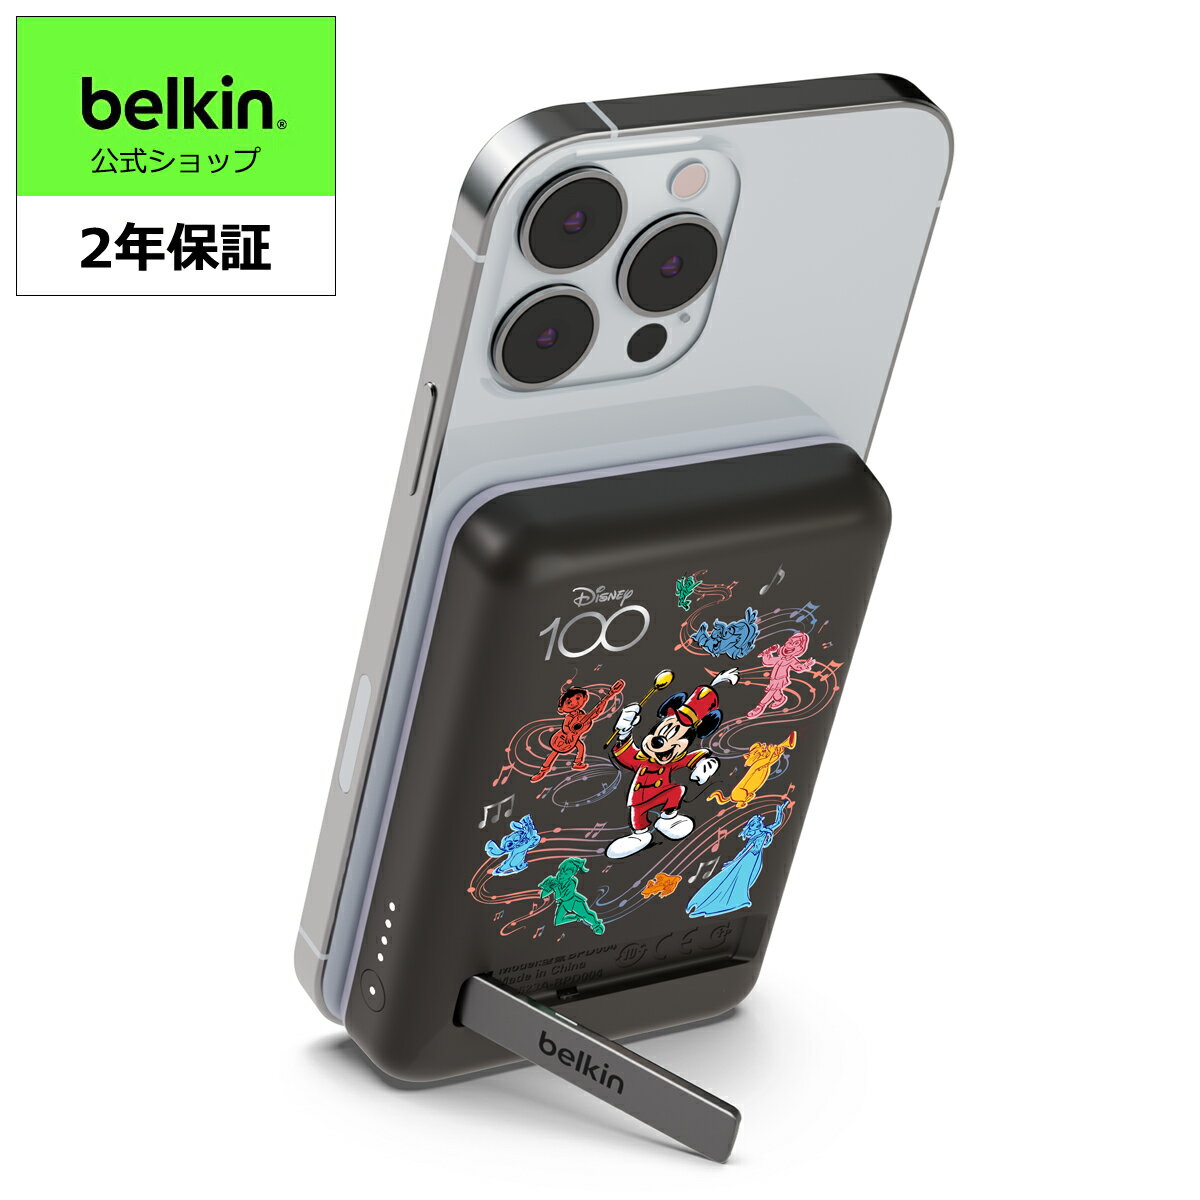 【もう電池切れの心配なし】BelkinのiPhone 14/13/12対応モバイルバッテリーBPD004は5,000mAHの大容量で、これはiPhone 13 Proで最大19時間のビデオ再生に十分なバッテリー量です。出先や急用時で充電が足りないときや電源が近くに無いときでも、バッテリーを追加。もう電池切れの心配はありません。【いつでもどこでもフル充電】モバイルバッテリーBPD004のワイヤレス充電は最大7.5Wに対応、USB-Cの有線接続の場合は最大10Wの充電に対応。お使いのiPhoneやスマートフォン、タブレットなどのデバイスを高速に充電することができます。また、パススルー充電にも対応しているので、モバイルバッテリーを充電しながら同時にデバイスを充電することが可能。1つのコンセントでデバイスもモバイルバッテリーもフル充電にしてお出かけ出来ます。【お出かけにピッタリ】モバイルバッテリーBPD004の充電スタンドはスリムでコンパクトな設計。パワフルな磁力の安全なMagSafe(マグネット)アタッチメントでiPhoneを安全に固定することができるので、据え置きでも外出先でも安心。デバイスを充電しながら一緒にポケットなどに入れてもかさばらず、かばんの空いたスペースにも入れやすい持ち運びに最適なサイズ感です。【自由な置き方で充電可能】付属のキックスタンドを使えばiPhoneを縦置き、横置きどちらでもモバイルバッテリーに設置することができるので、動画などを視聴しながらの充電でも体勢や角度に合わせて置き方を選ぶことが出来ます。【同梱品】製品本体、USB-C to Cケーブル(1m)【保証】2年保証 、安心の日本語サポート。最大28万円を上限とした「条件付き接続機器保証」付き。【VGP 2023金賞 受賞】モバイルバッテリー部門で2023VGPアワード金賞を受賞(アワード主体:株式会社音元出版 PHILEWEB DIVISION、2022年11月)届け出事業者名：ベルキン株式会社 PSマーク種類：PSE